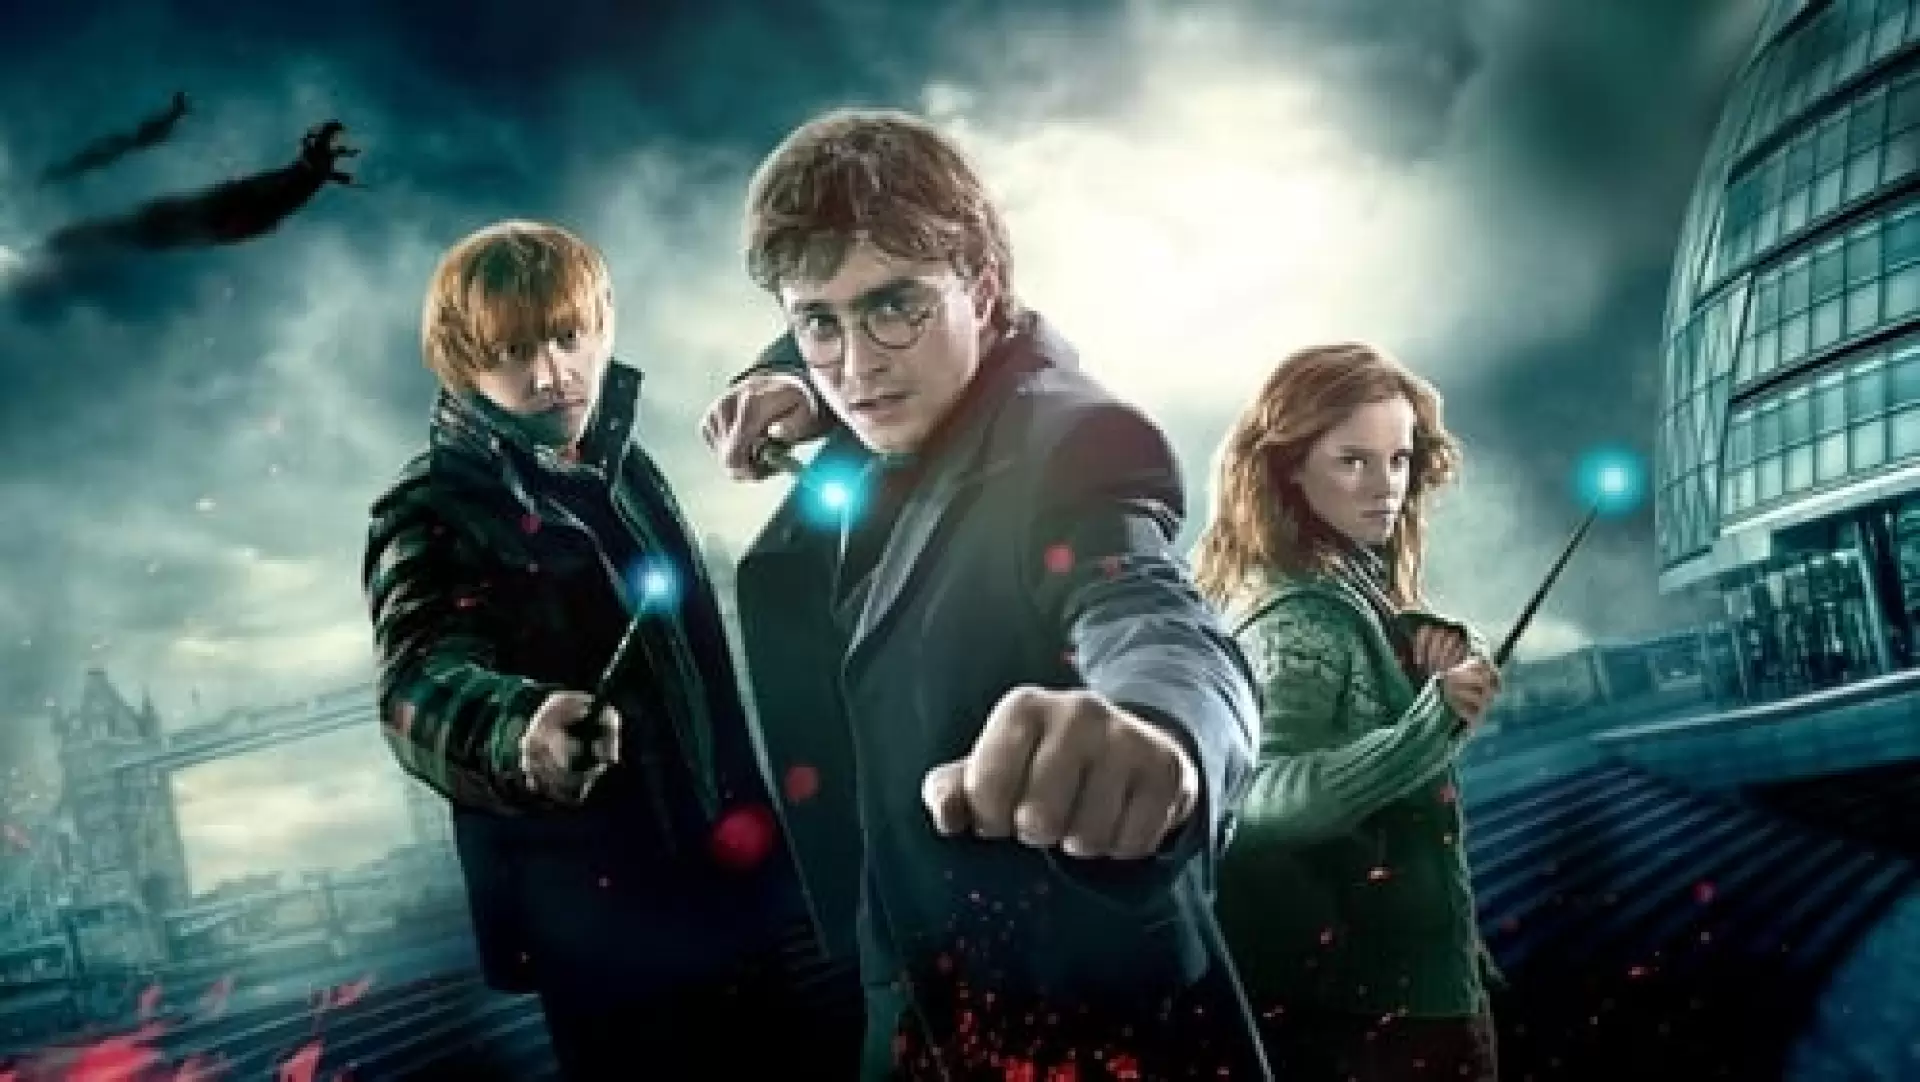 دانلود فیلم Harry Potter and the Deathly Hallows: Part 1 2010 (هری پاتر و یادگاران مرگ - قسمت اول) با زیرنویس فارسی و تماشای آنلاین